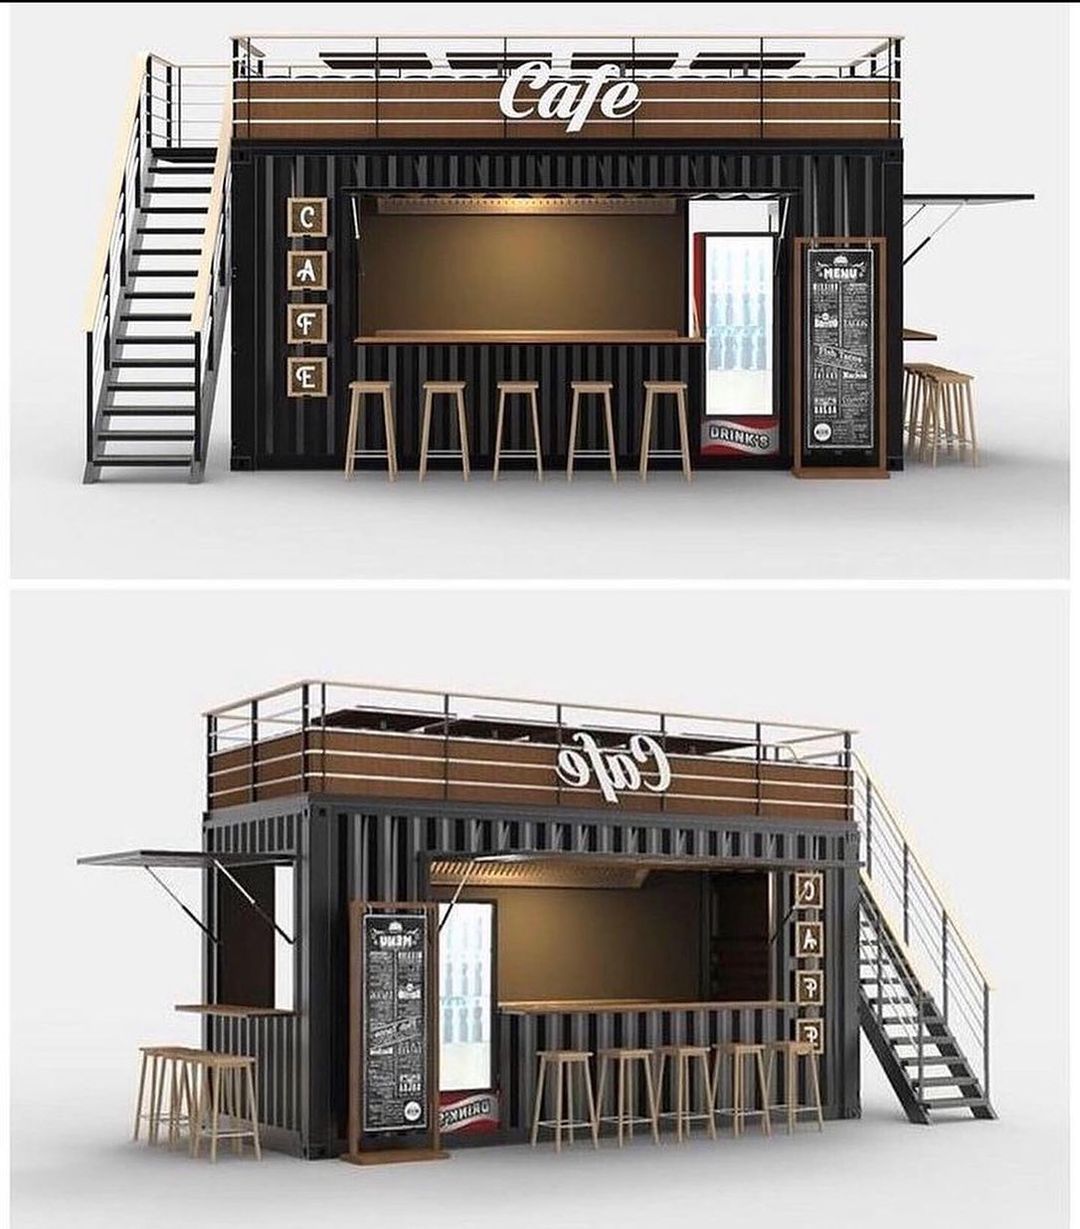 Container café design.